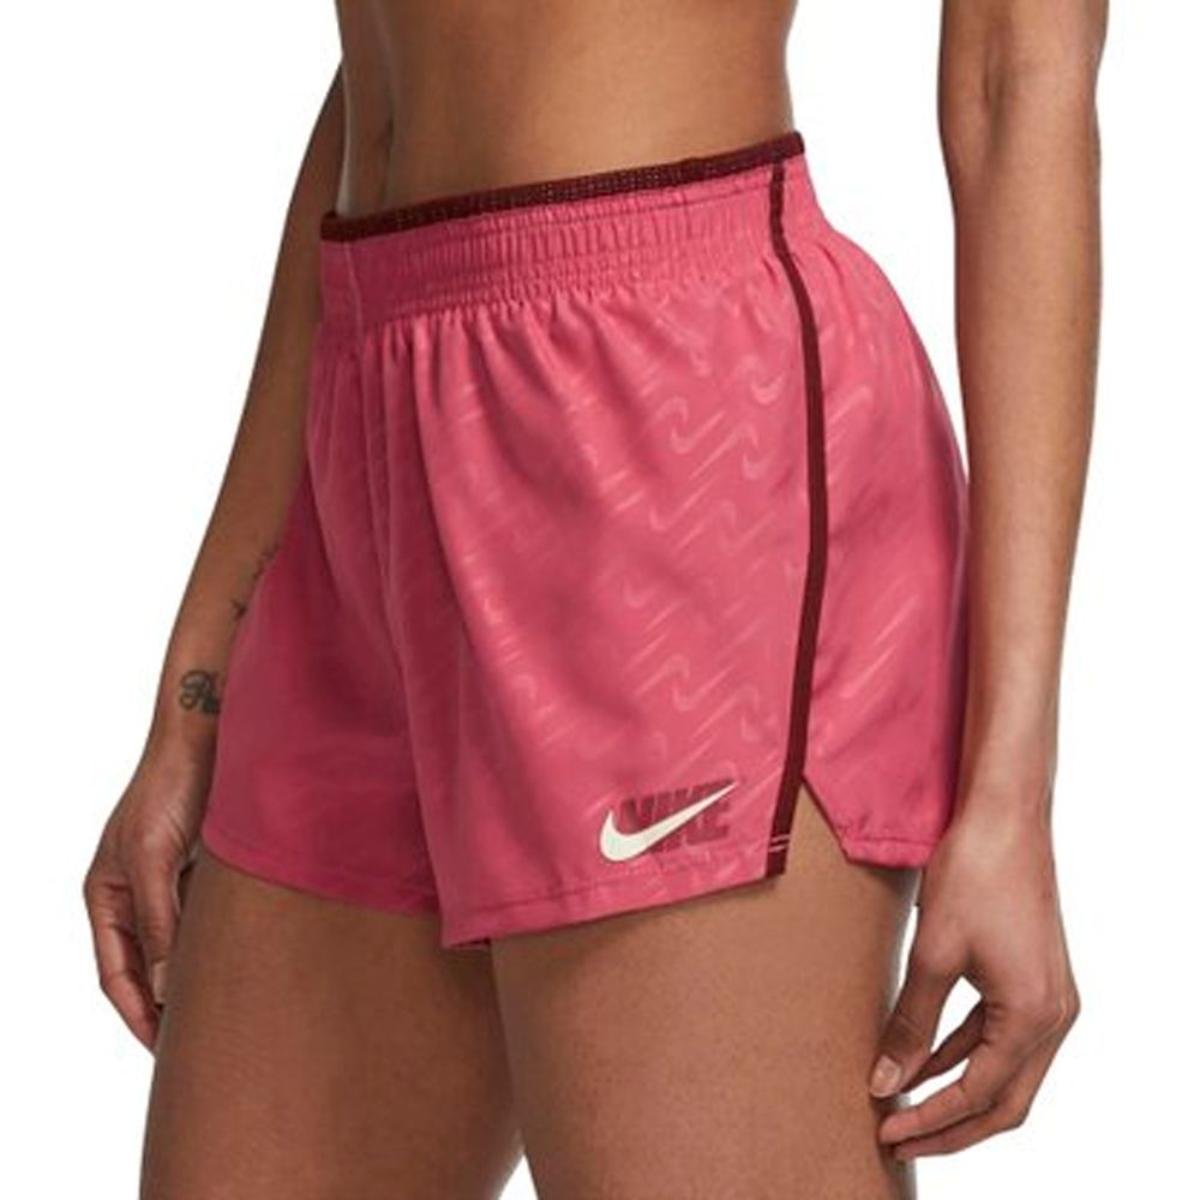 Nike Plus Size 3X Tempo Icon Clash Pink Workout Shorts Retail $35